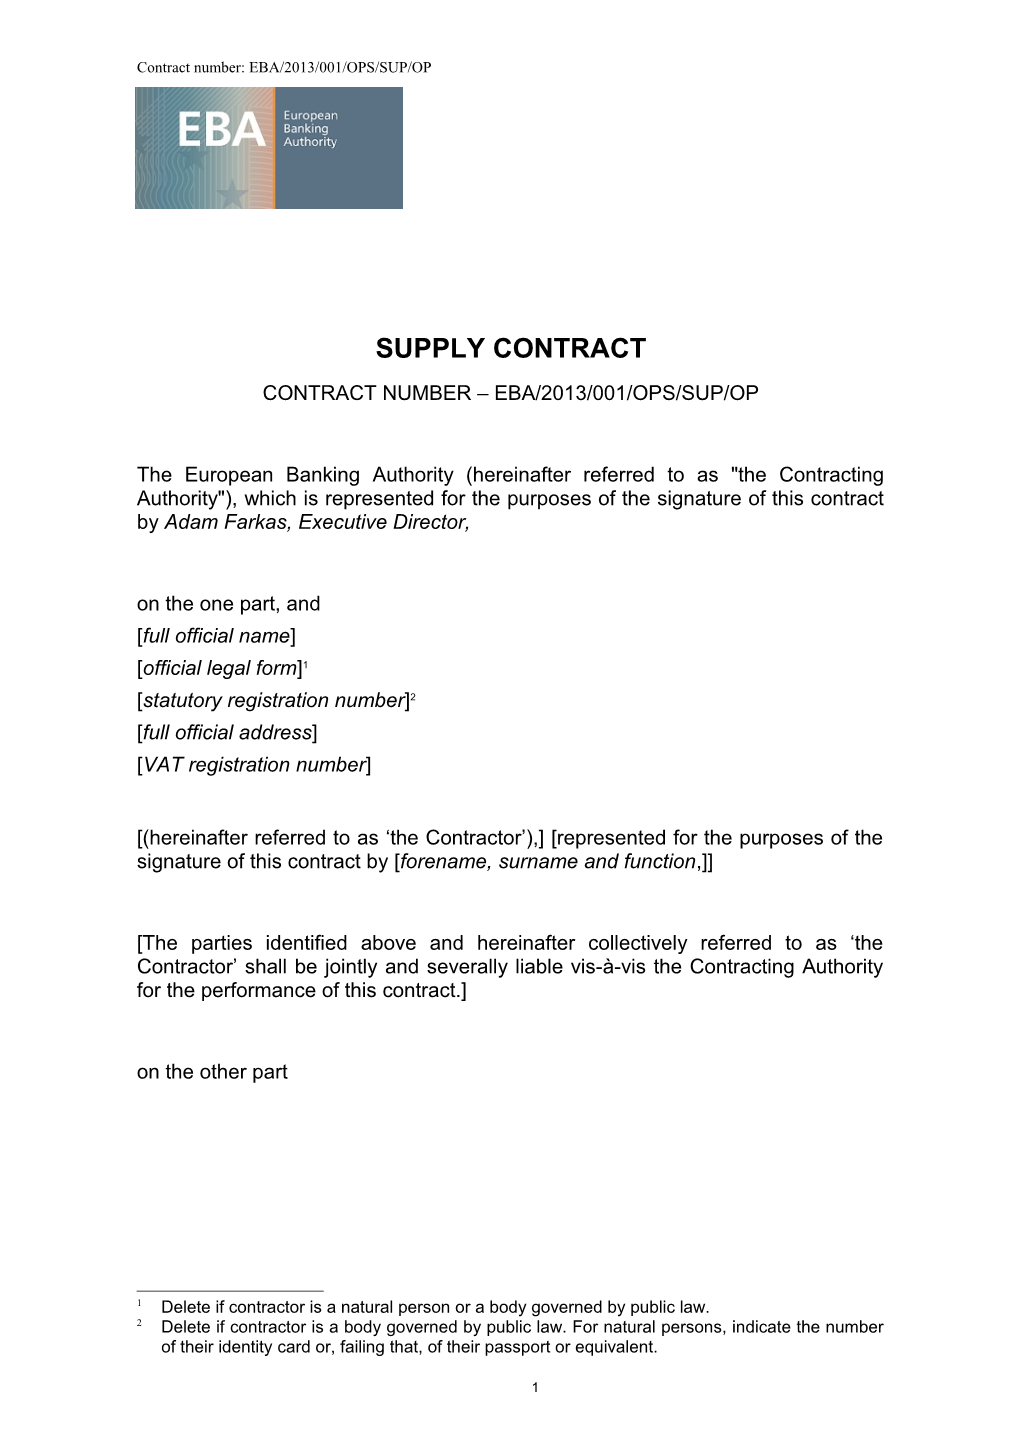 Contract Number: EBA/2013/001/OPS/SUP/OP